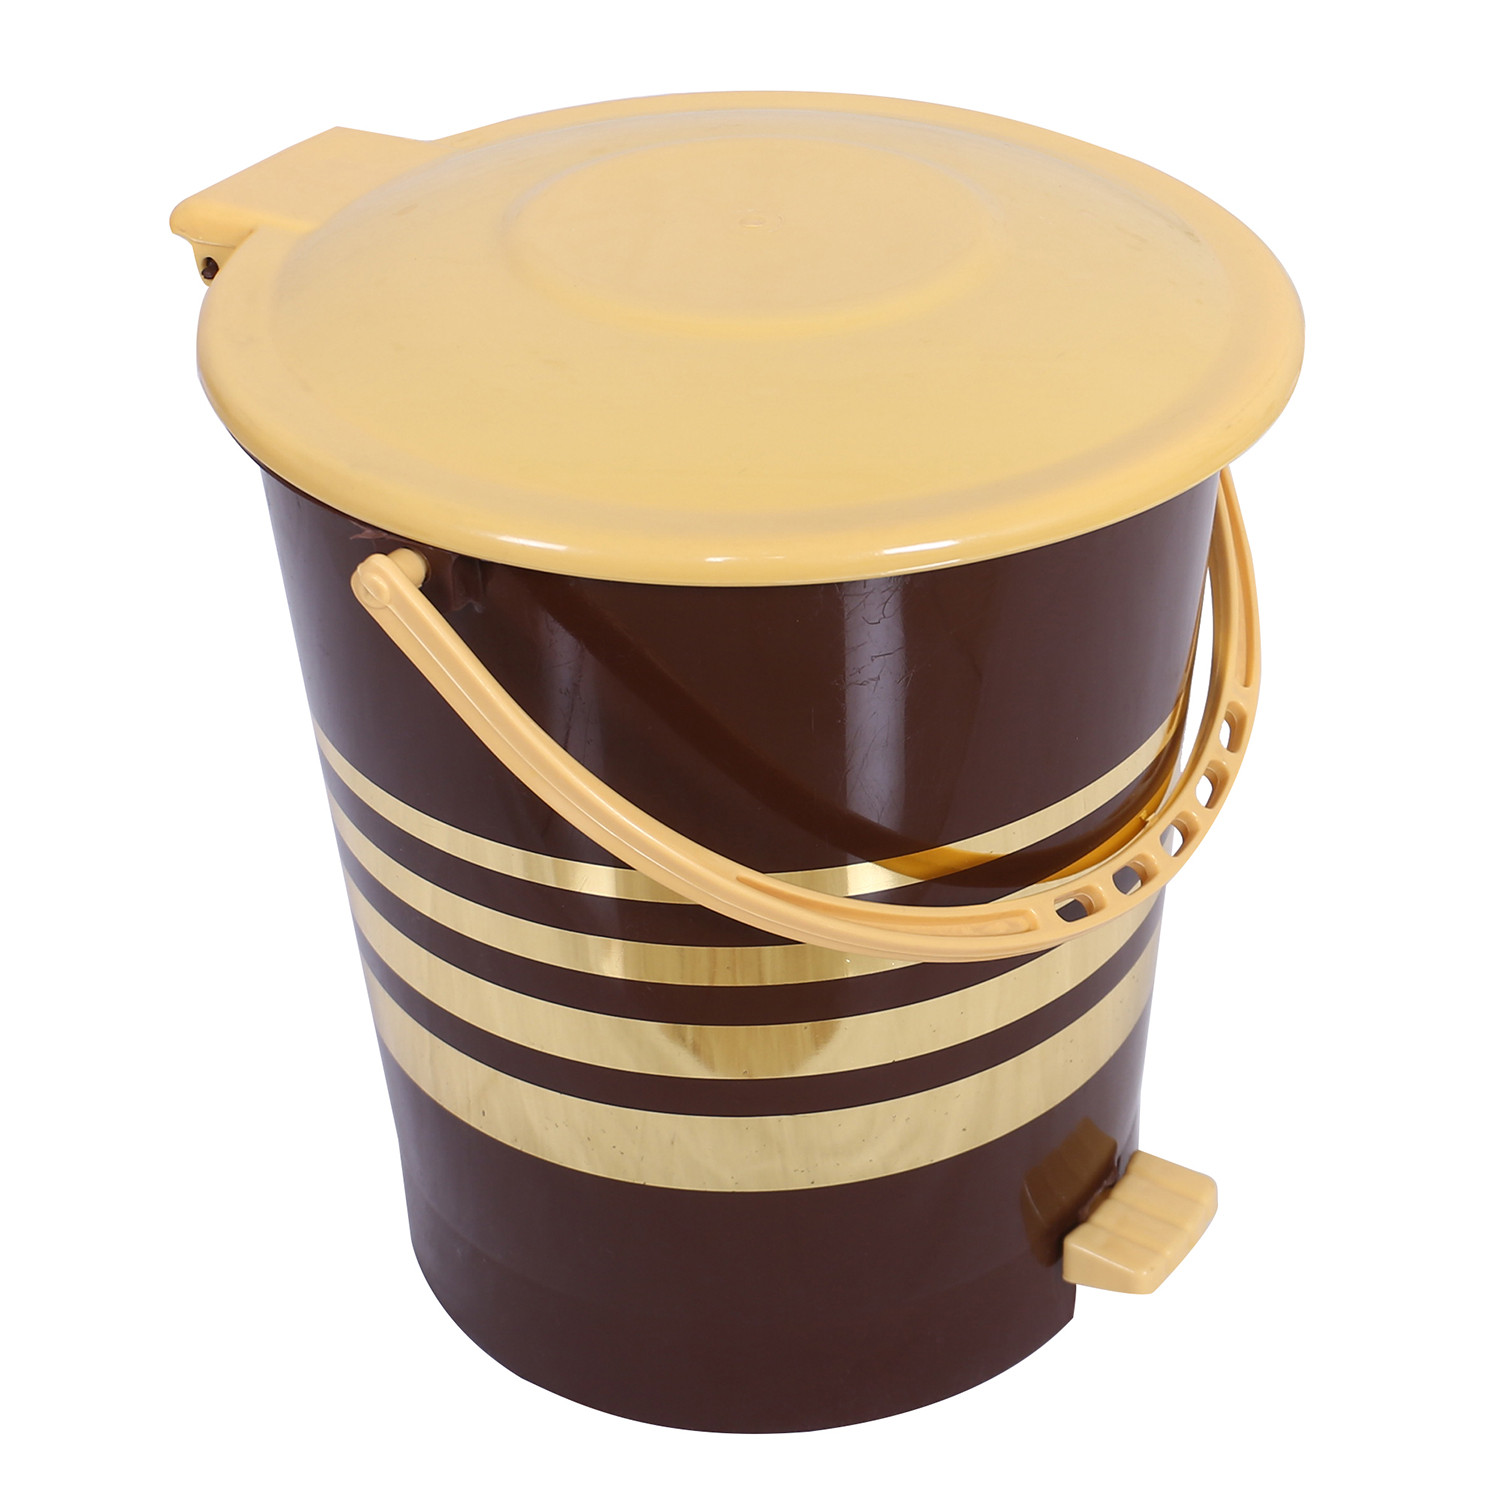 Kuber Industries Dustbin|Plastic Pedal Dustbin|Kitchen Inner Bucket Waste Paper Bin|Dustbin For Bedroom|Gold Layer 10 Litre Dustbin (Brown)